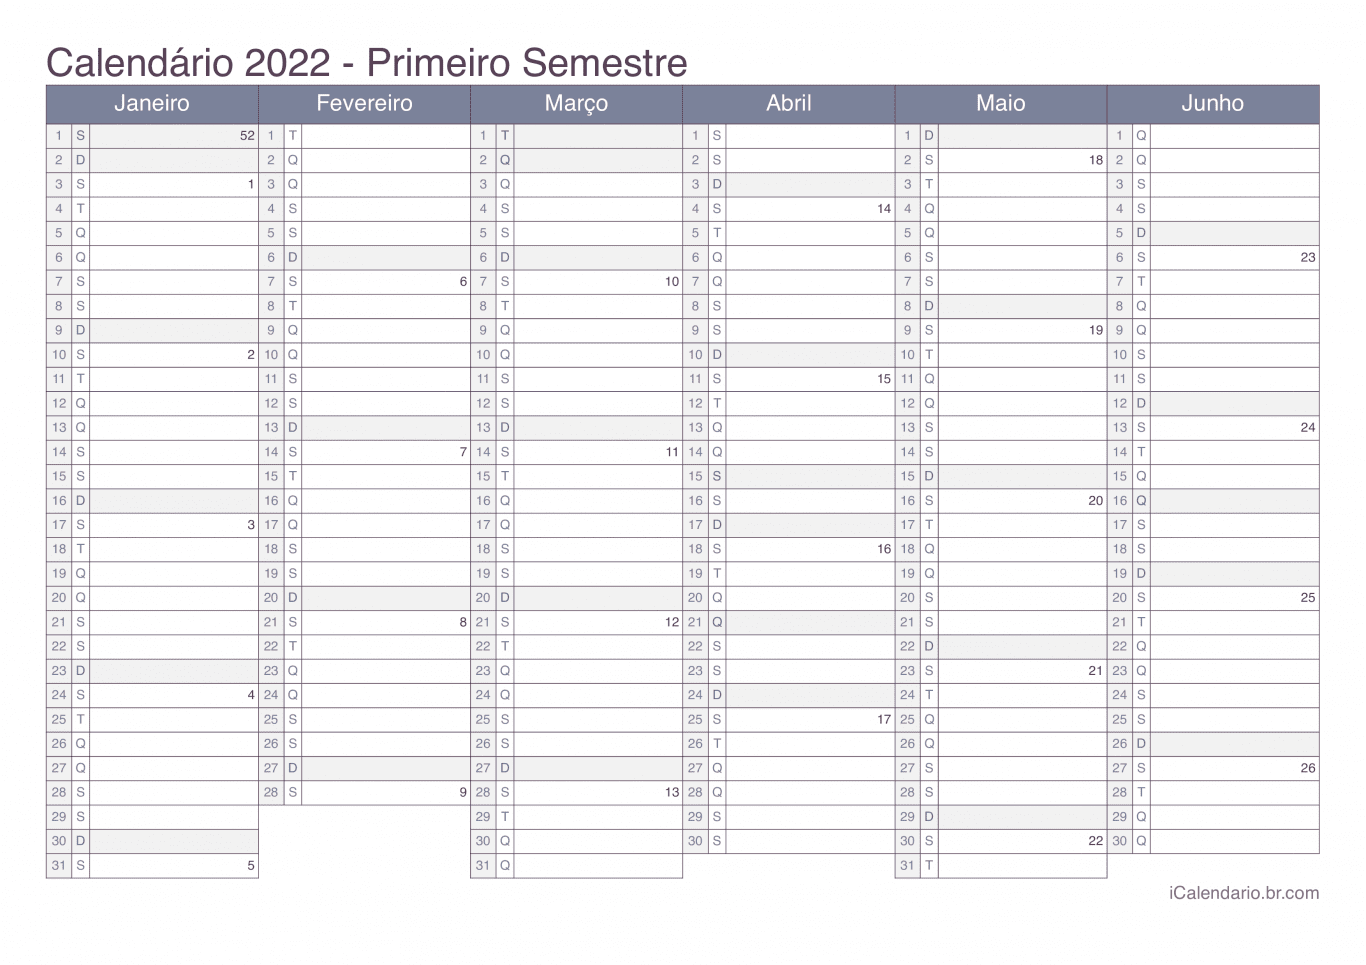 Calendário por semestre com números da semana 2022 - Office